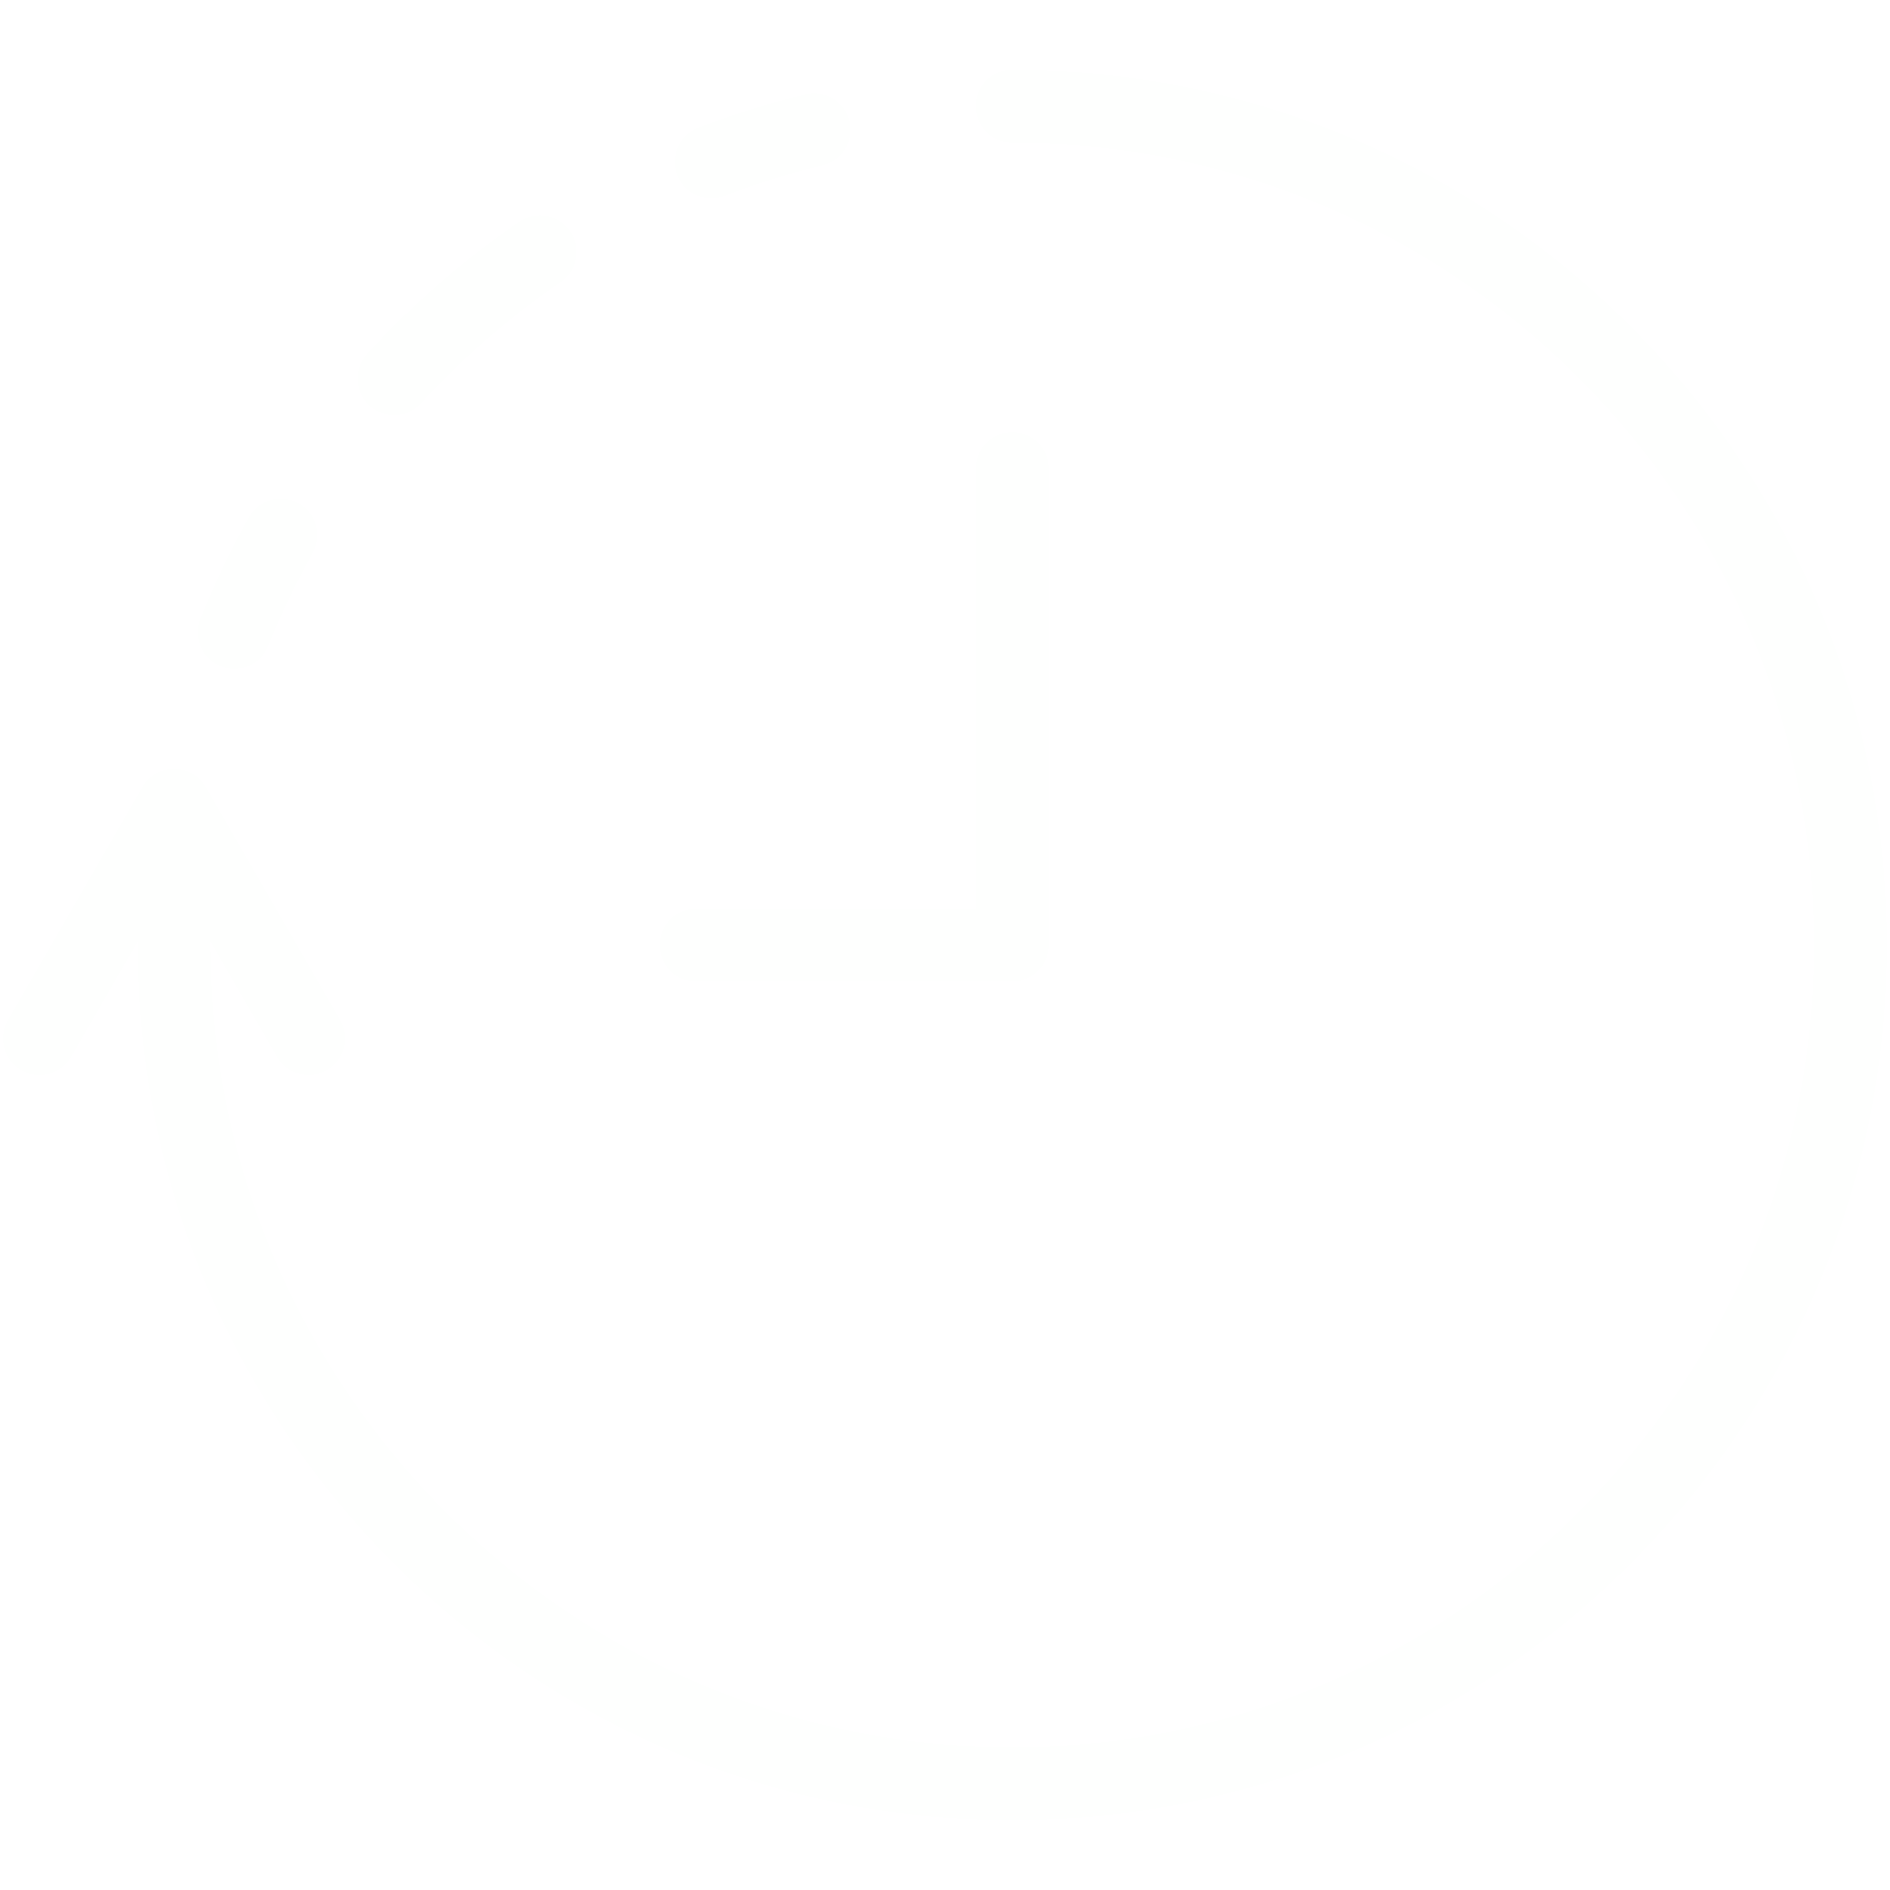 Illustration einer Uhr, wobei die Umrandung von neun bis zwölf Uhr durch eine gestrichelte Linie dargestellt werden. 